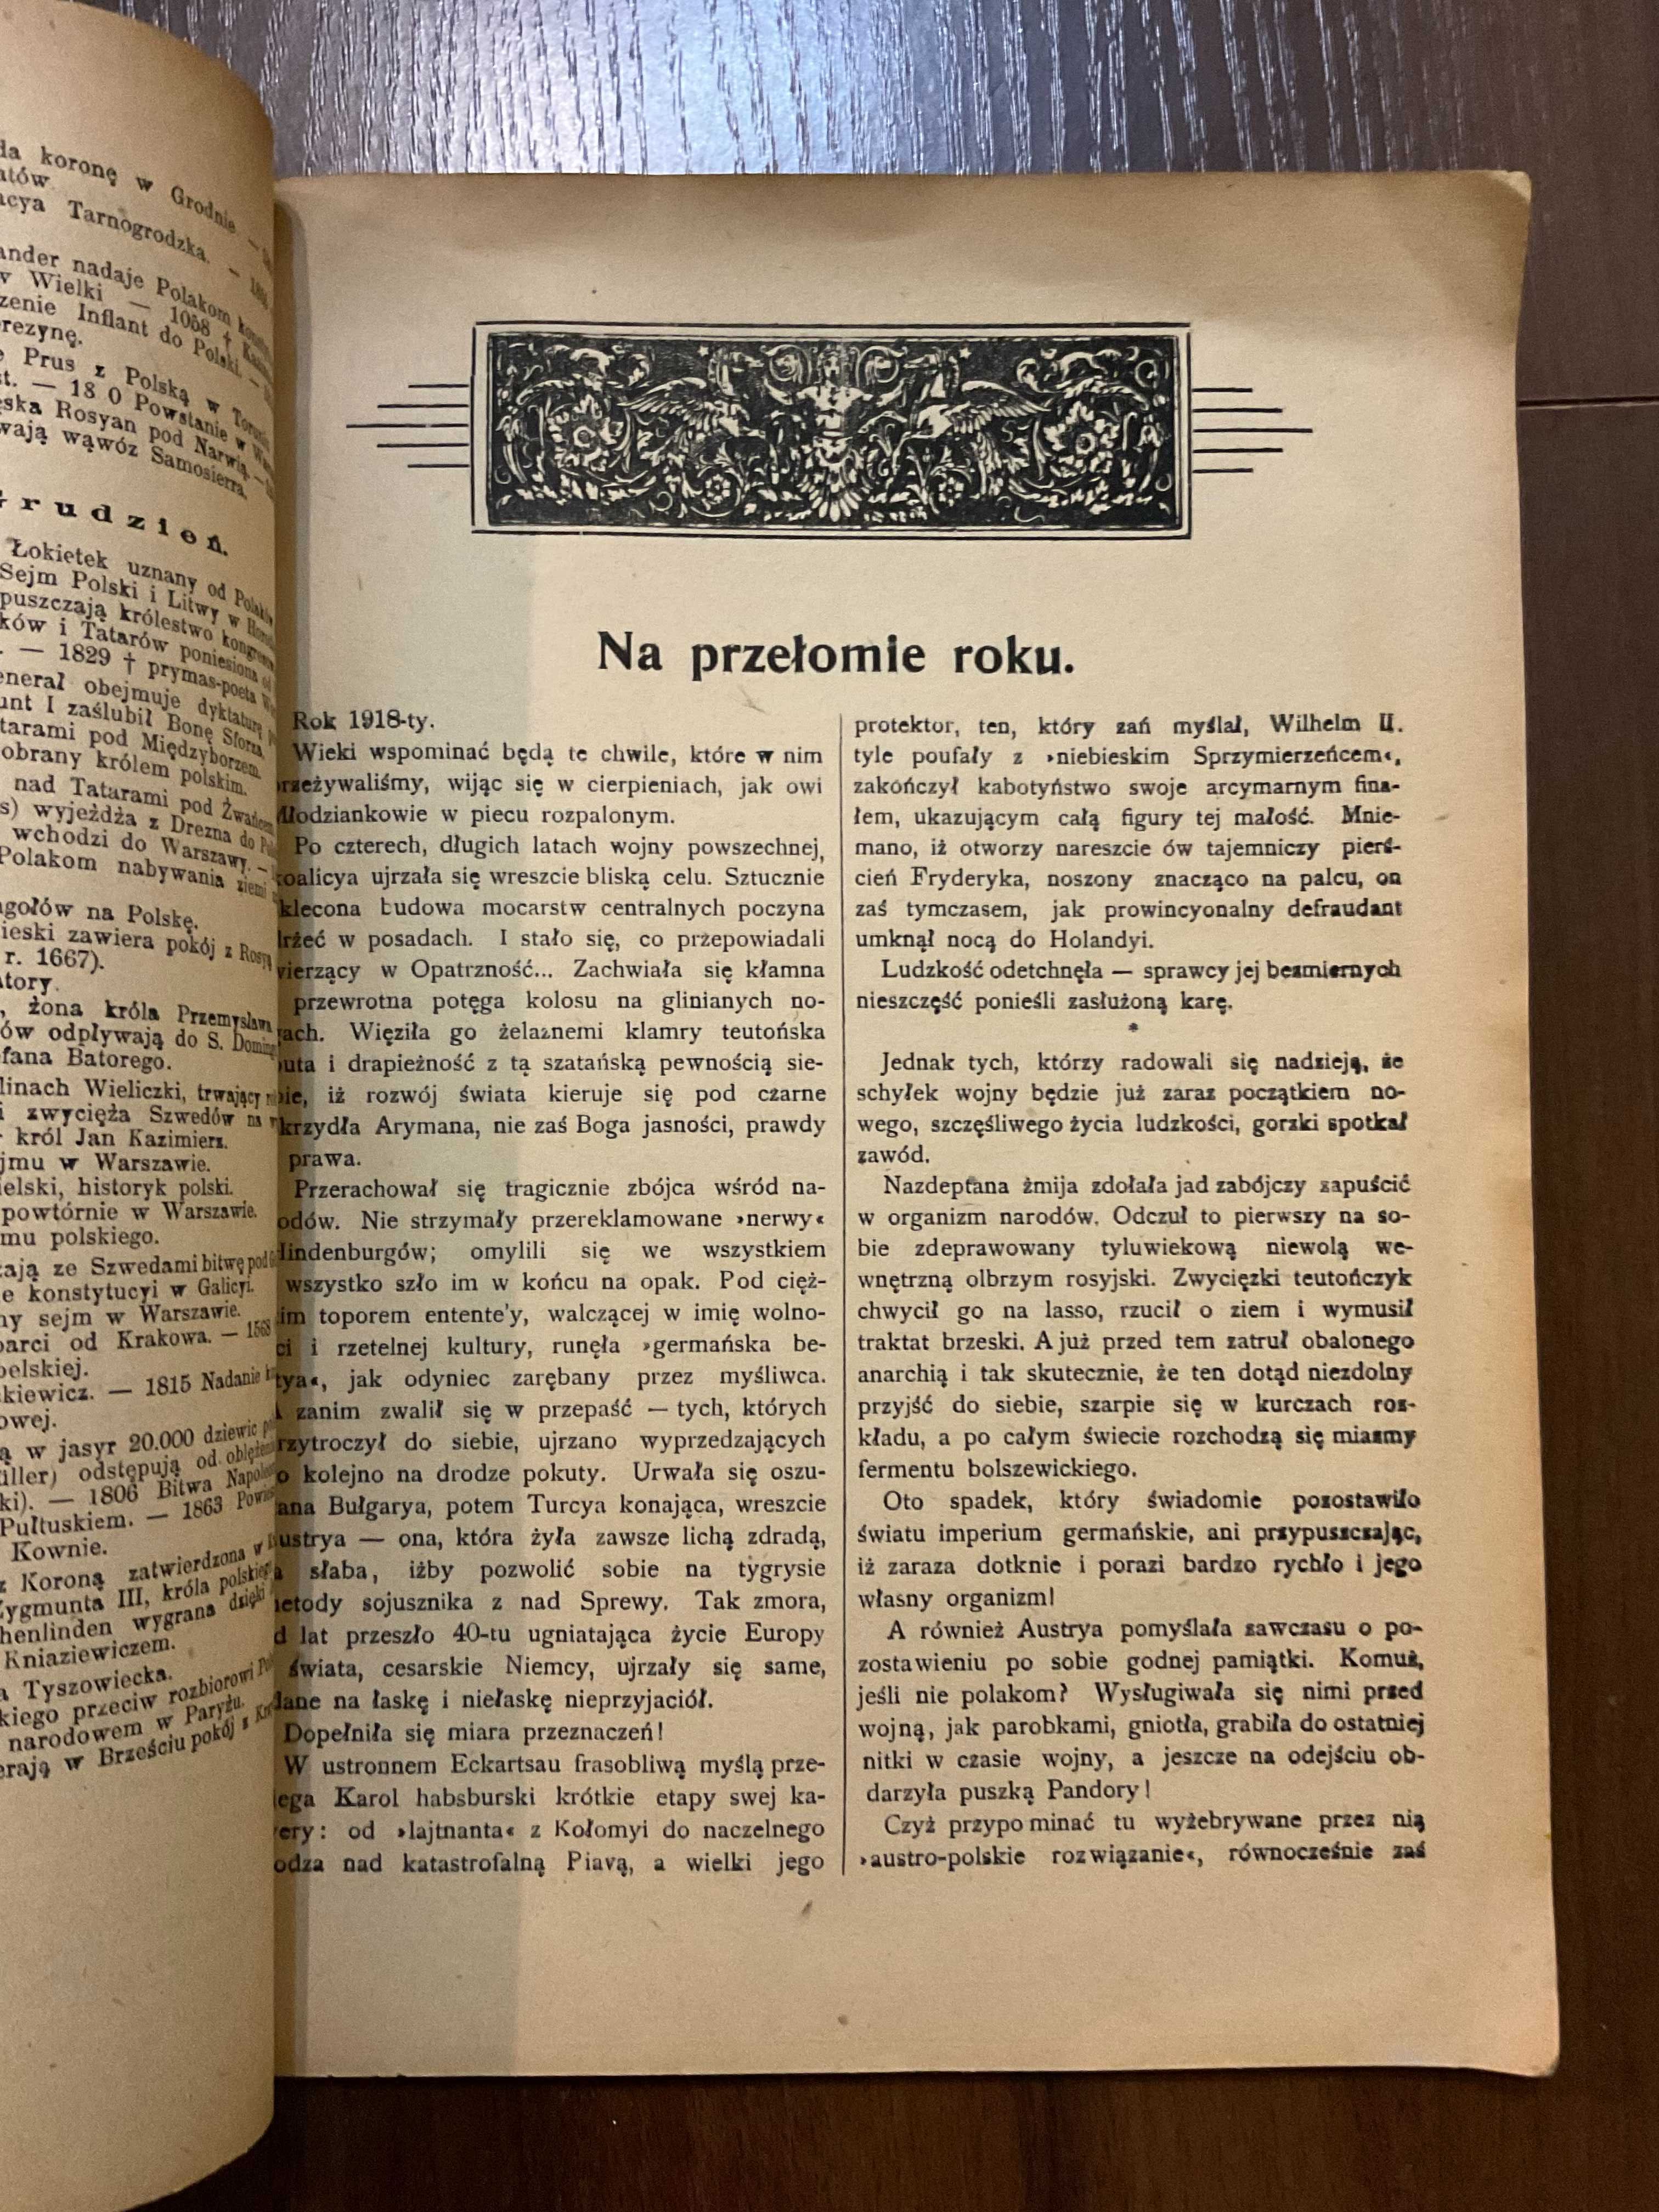 Львів 1919 Ілюстрований Календар Галицький